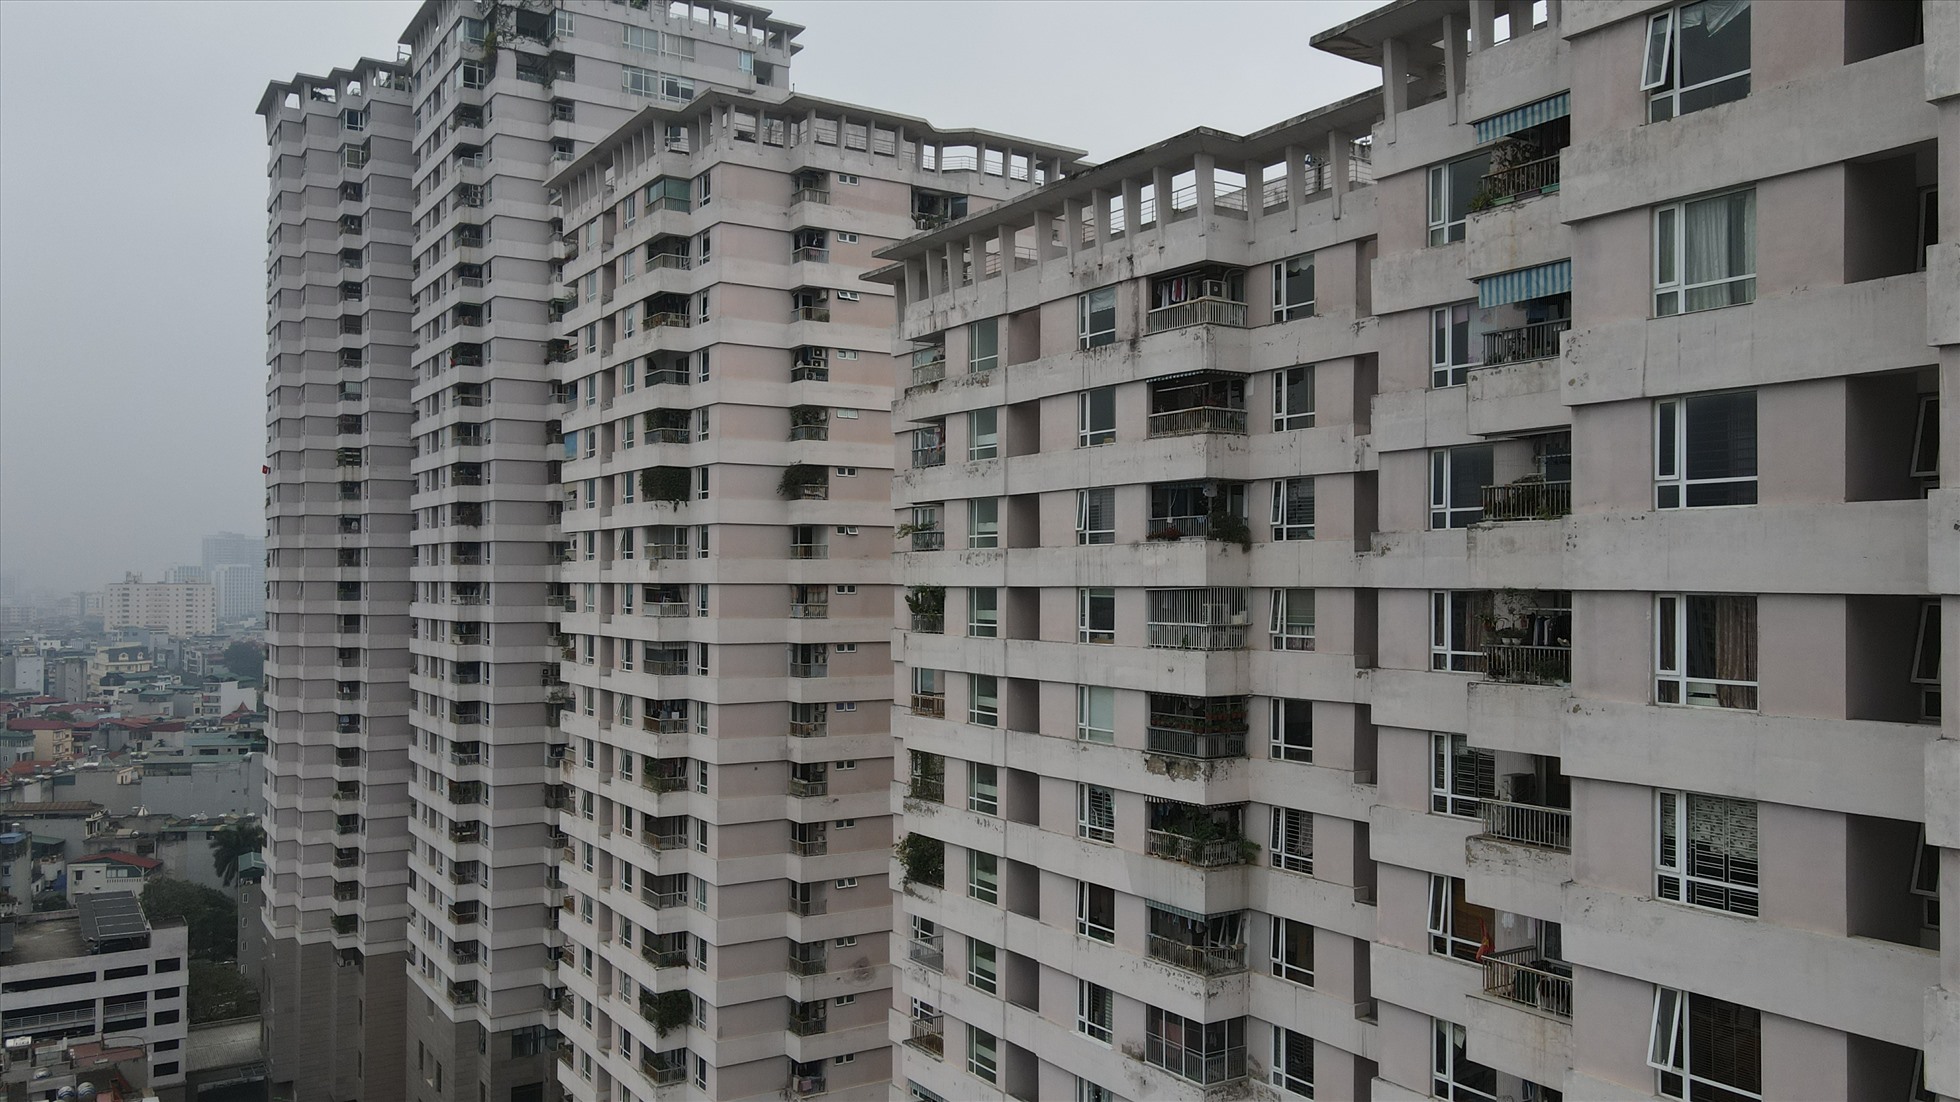 Tại Hà Nội vẫn có những căn hộ tại chung cư cũ mức giá phù hợp với tài chính trên dưới 2 tỉ đồng. Ảnh: Cao Nguyên